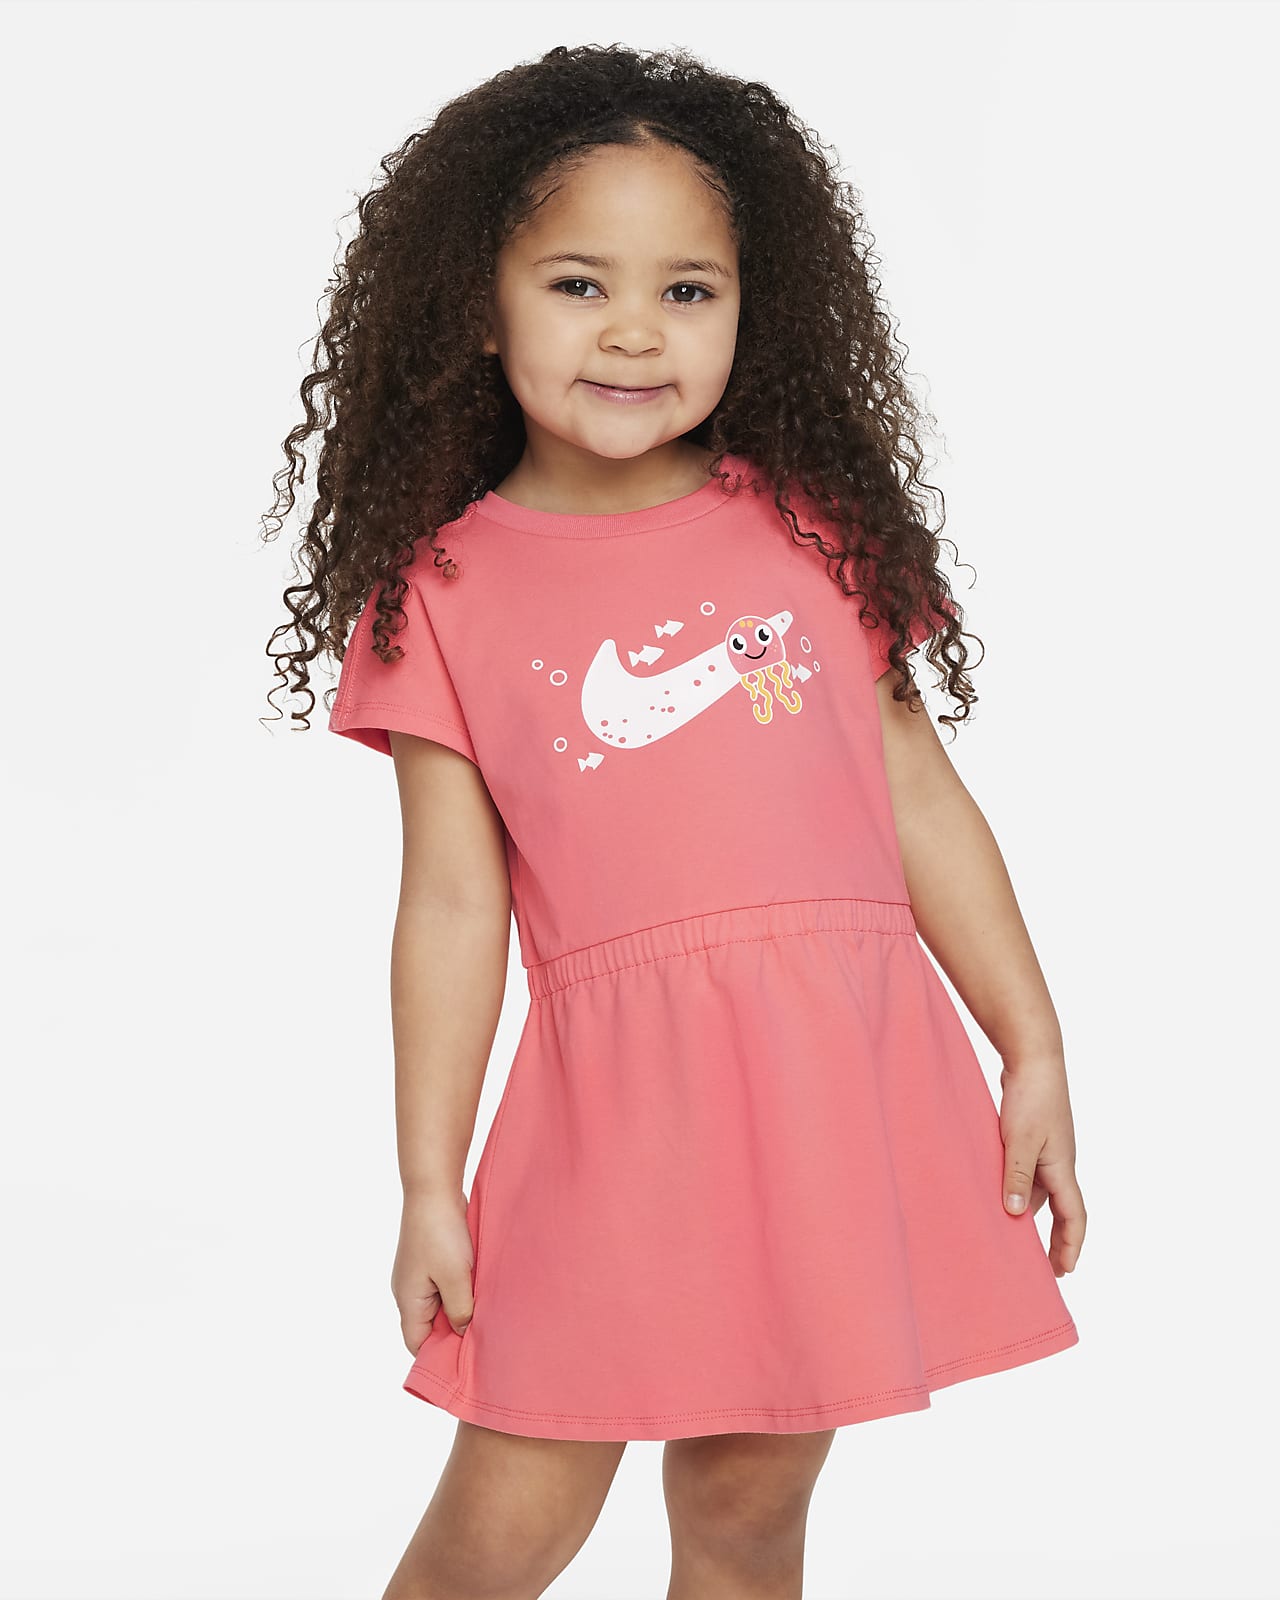 Nike Coral Reef 婴童连衣裙